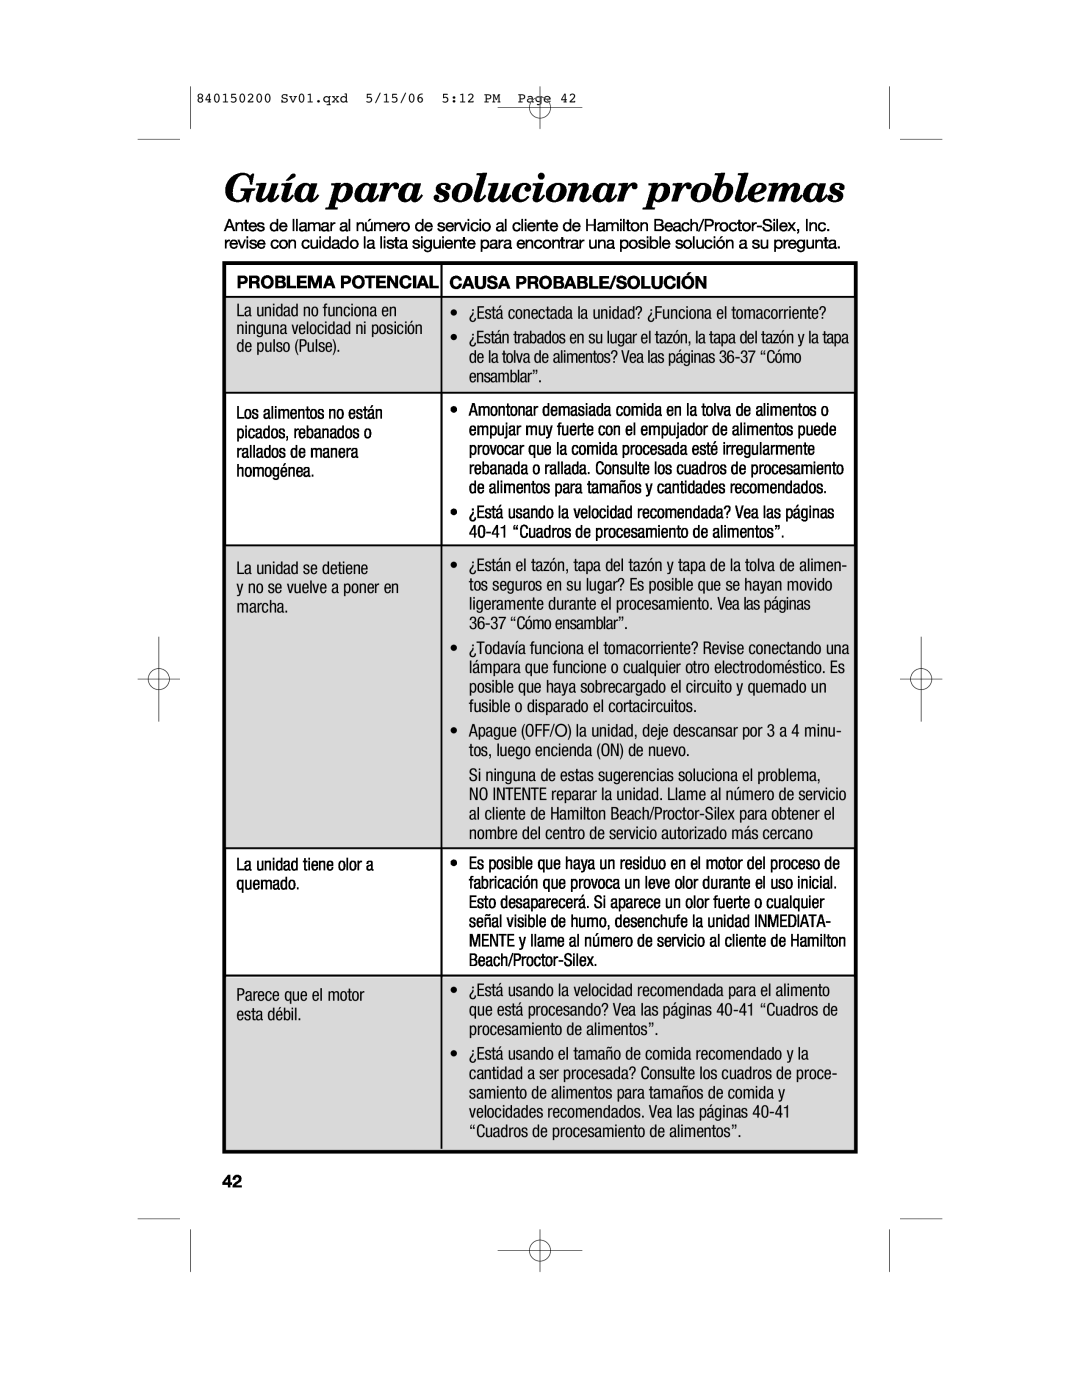 Proctor-Silex 840150200 manual Guía para solucionar problemas, Problema Potencial, Causa Probable/Solución 